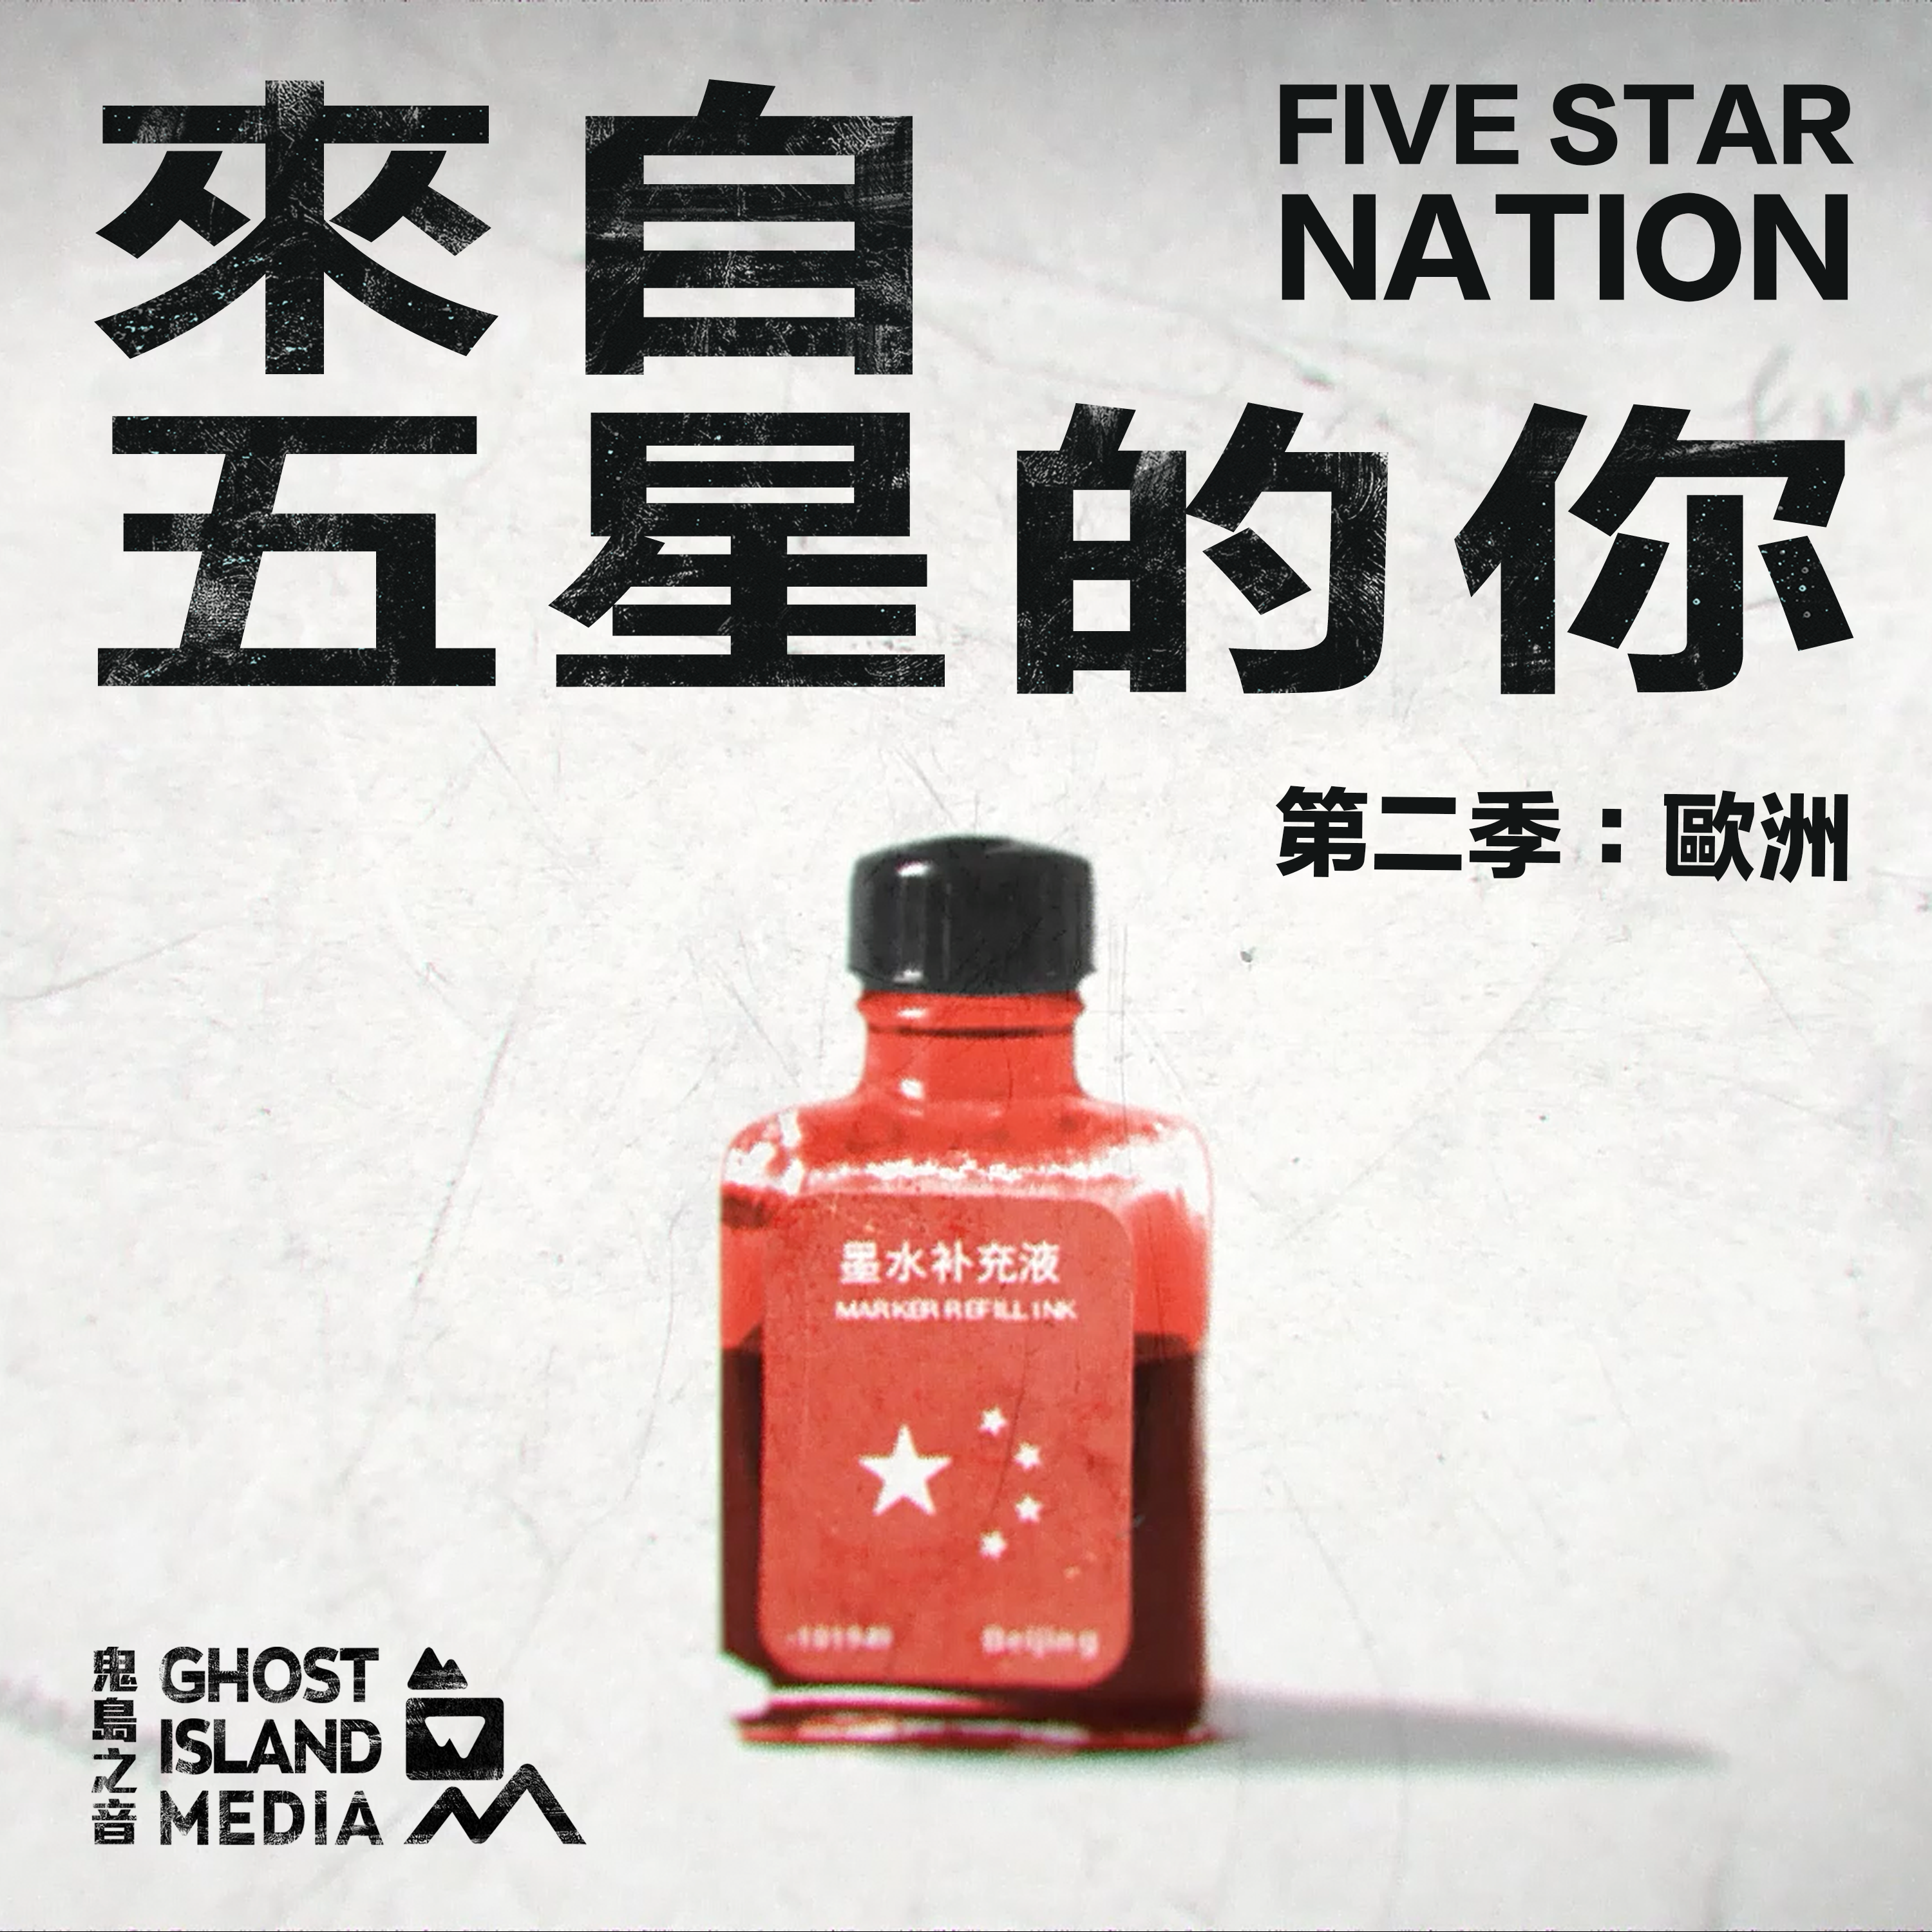 Five Star Nation (來自五星的你)